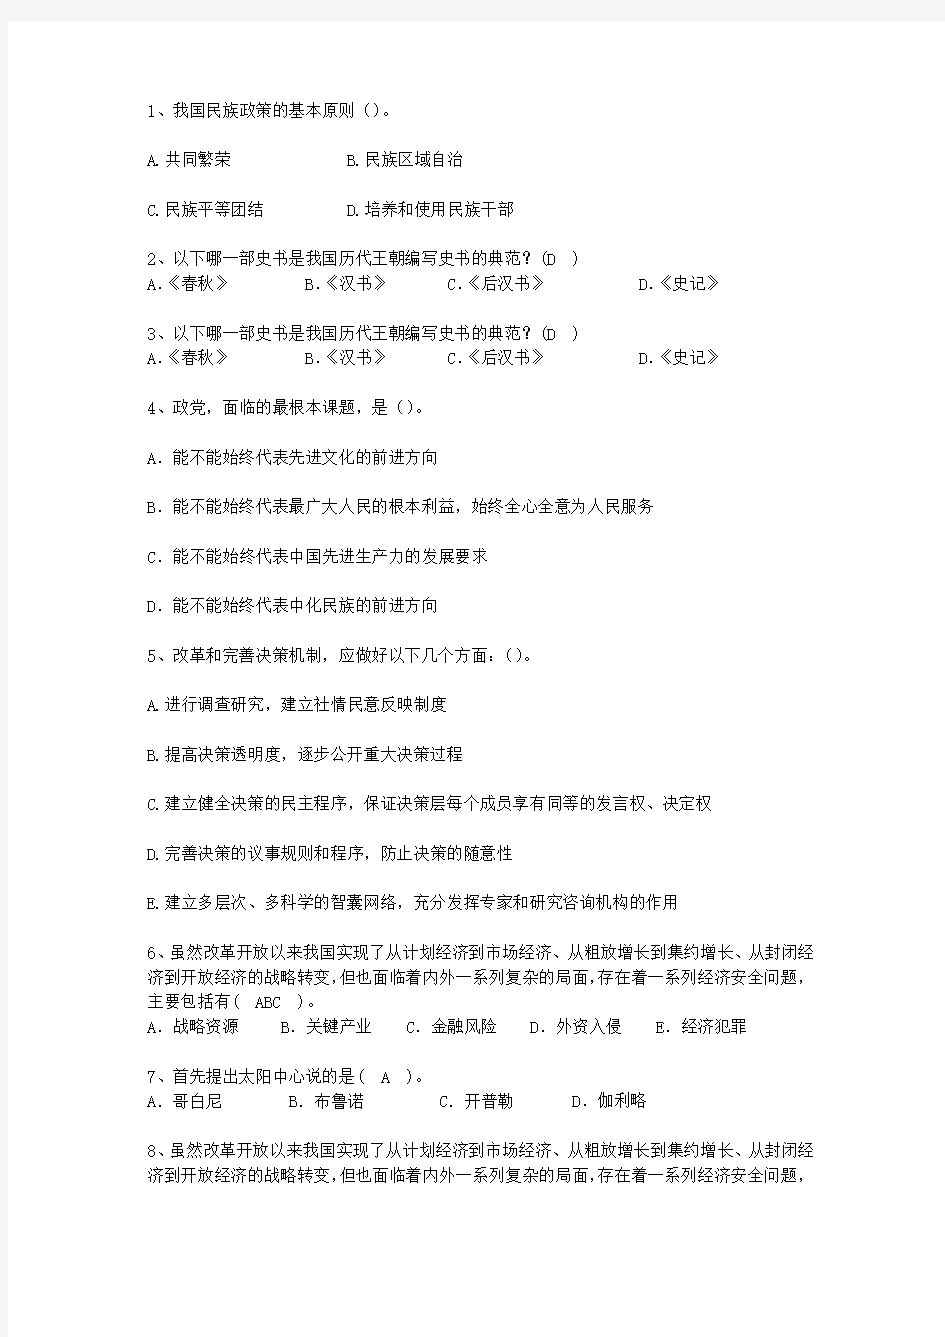 2010香港特别行政区公开选拔领导干部面试(必备资料)